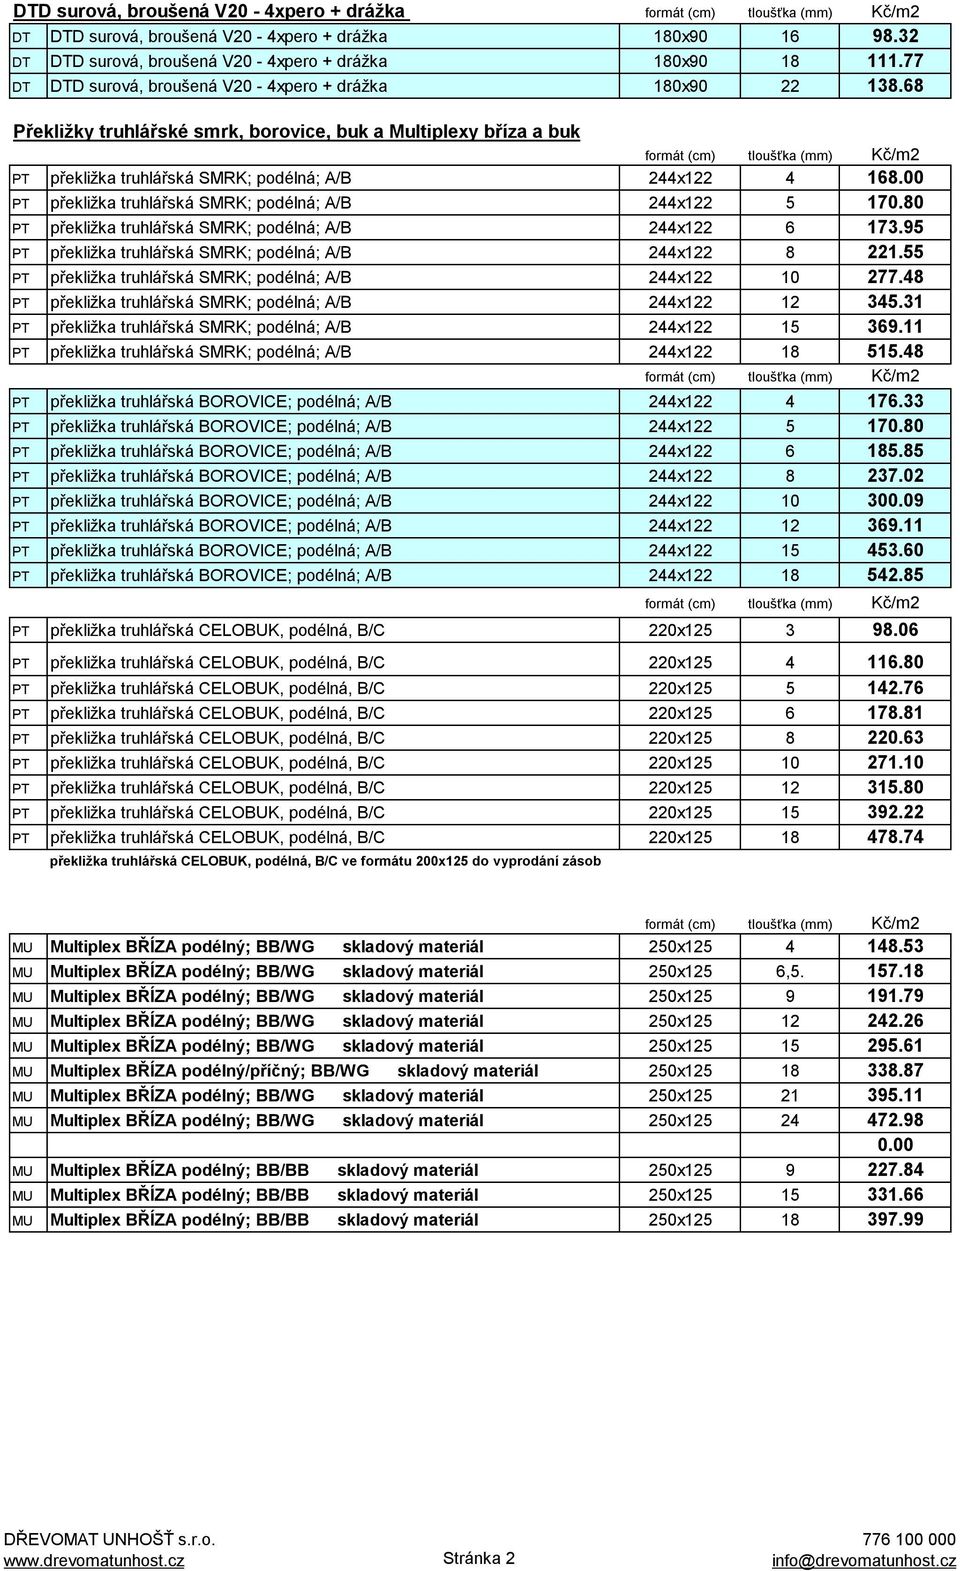 00 PT překližka truhlářská SMRK; podélná; A/B 244x122 5 170.80 PT překližka truhlářská SMRK; podélná; A/B 244x122 6 173.95 PT překližka truhlářská SMRK; podélná; A/B 244x122 8 221.